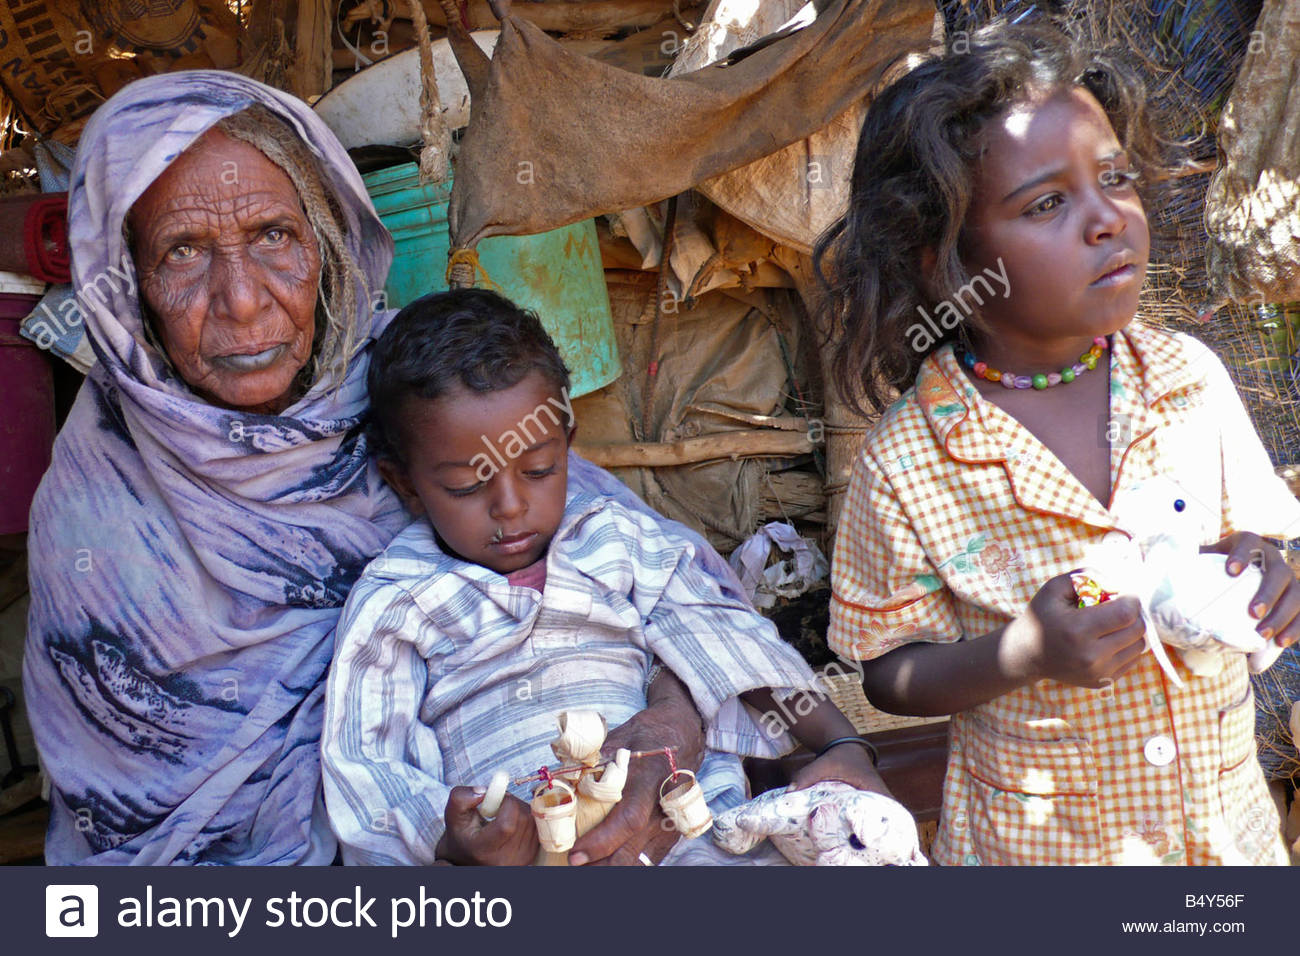 elderly-woman-with-childrenbayda-desertnubiasudannorth-africa-B4Y56F.jpg